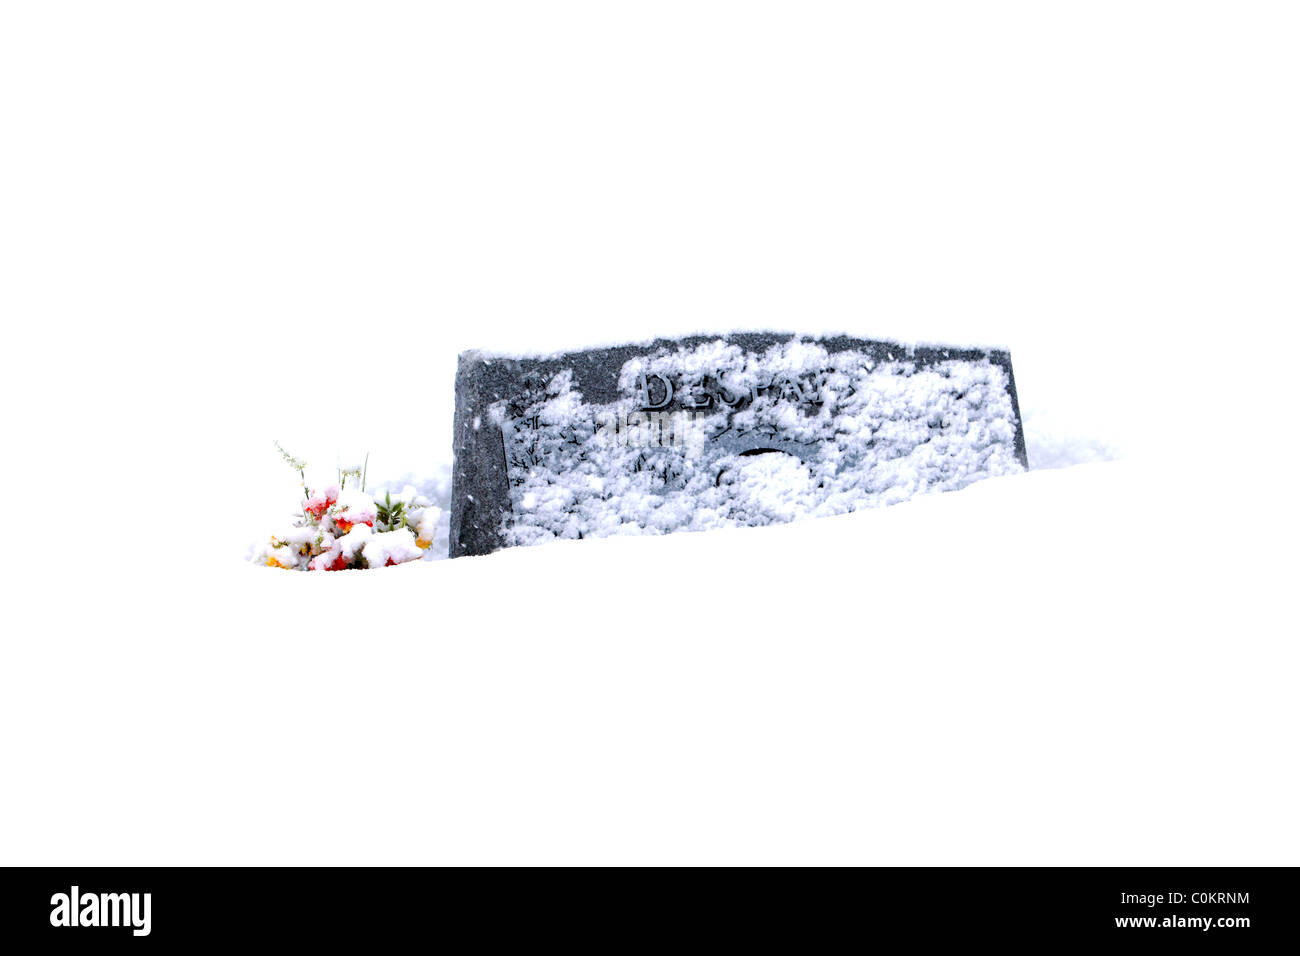 Pierre tombale enterré dans la neige avec des fleurs dans un cimetière blanc neige profonde. La saison d'hiver donnant une connotation religieuse et froid. Banque D'Images